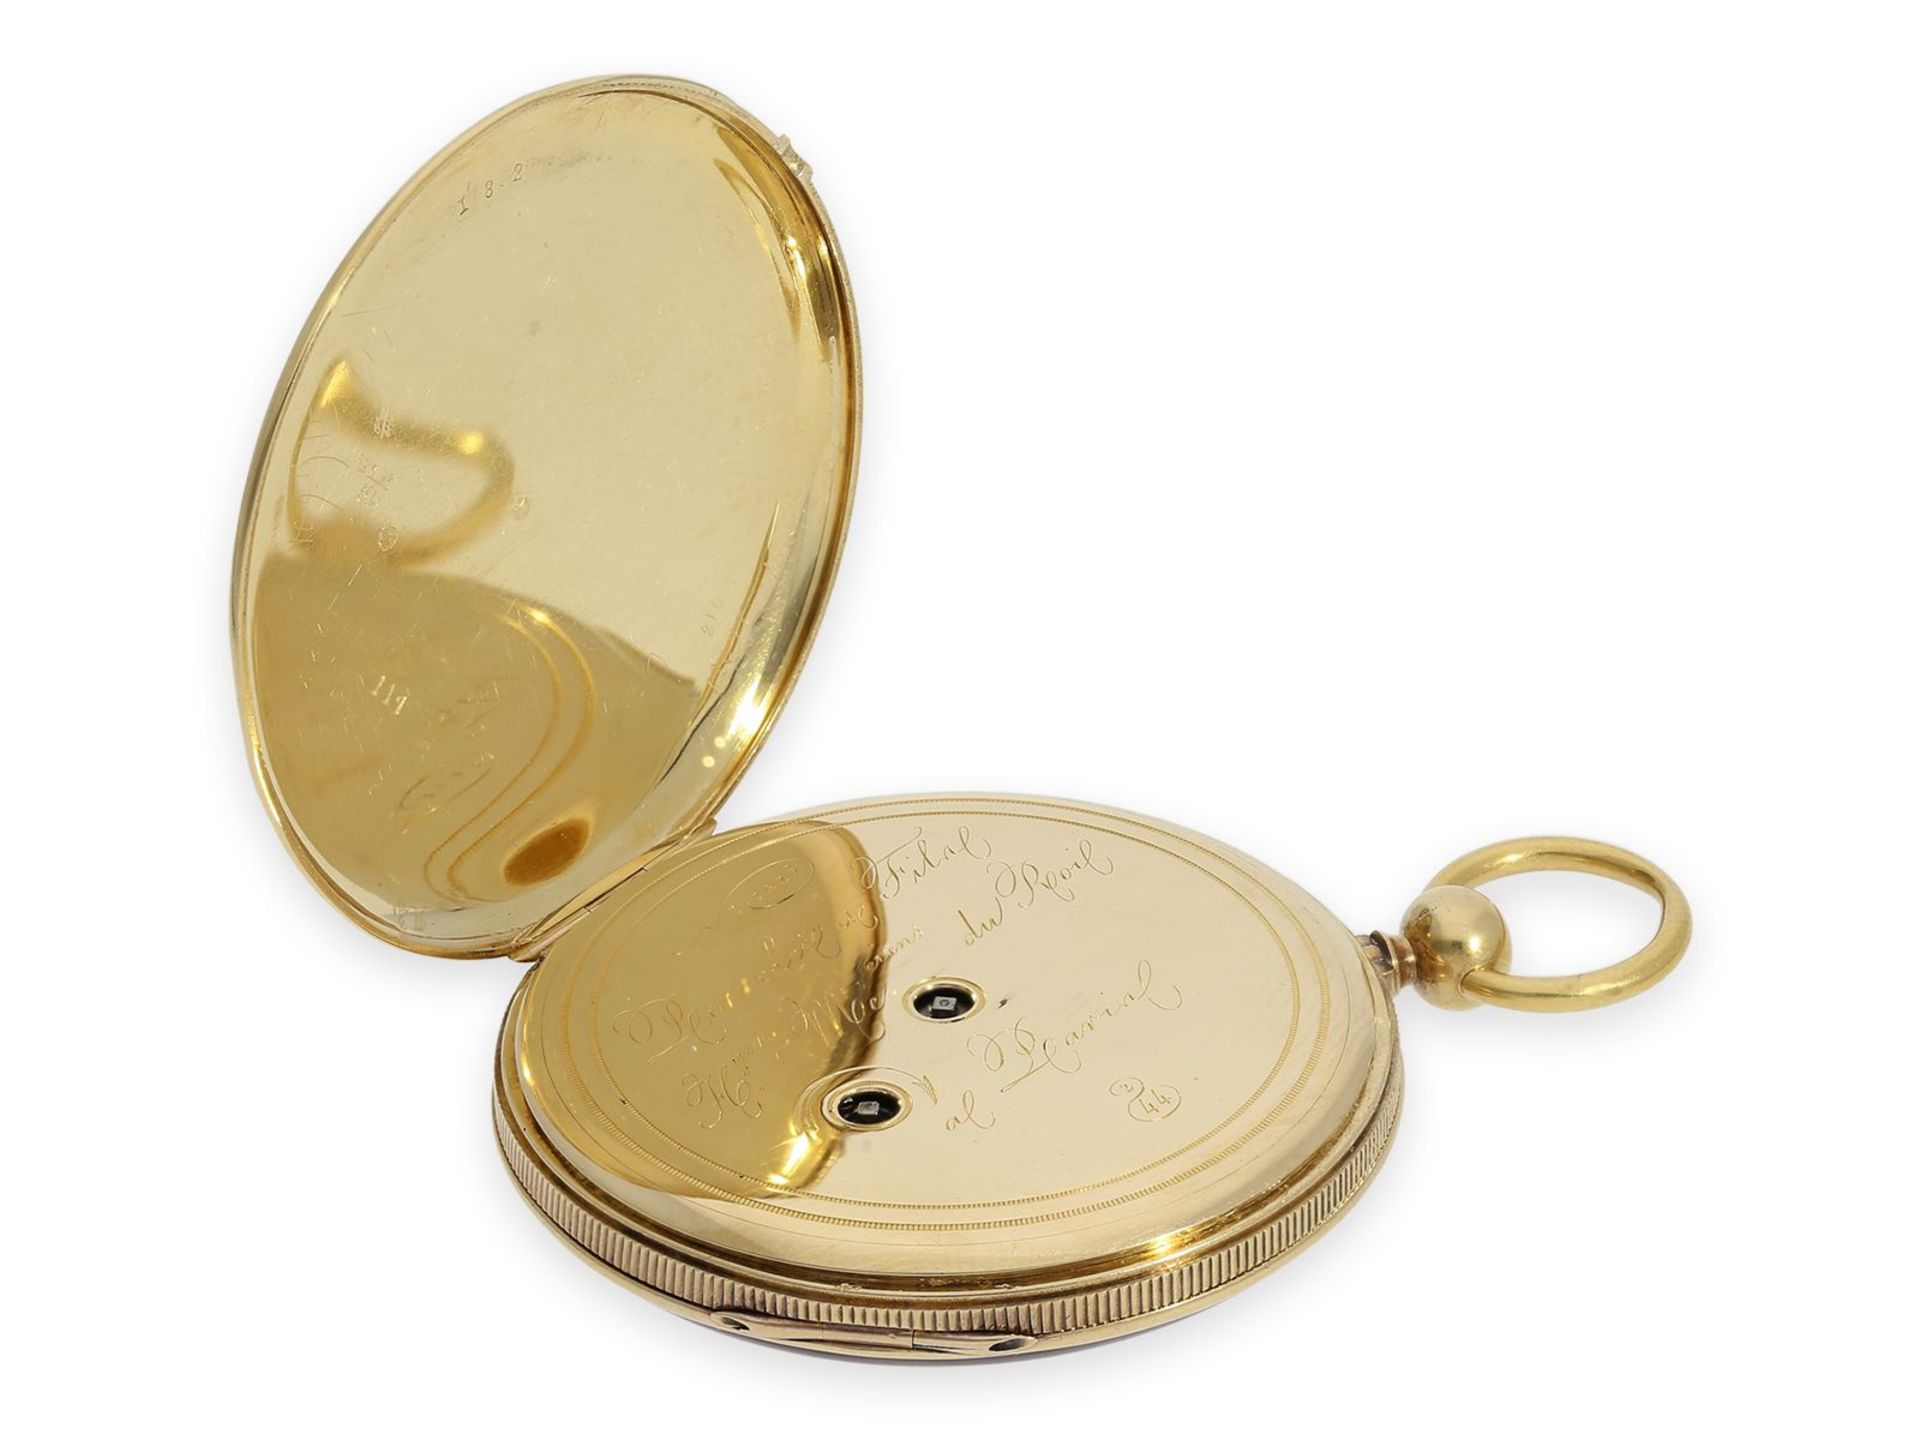 Taschenuhr: französische Lepine von sehr feiner Qualität mit Schlagwerk, königlicher Uhrmacher - Bild 4 aus 6